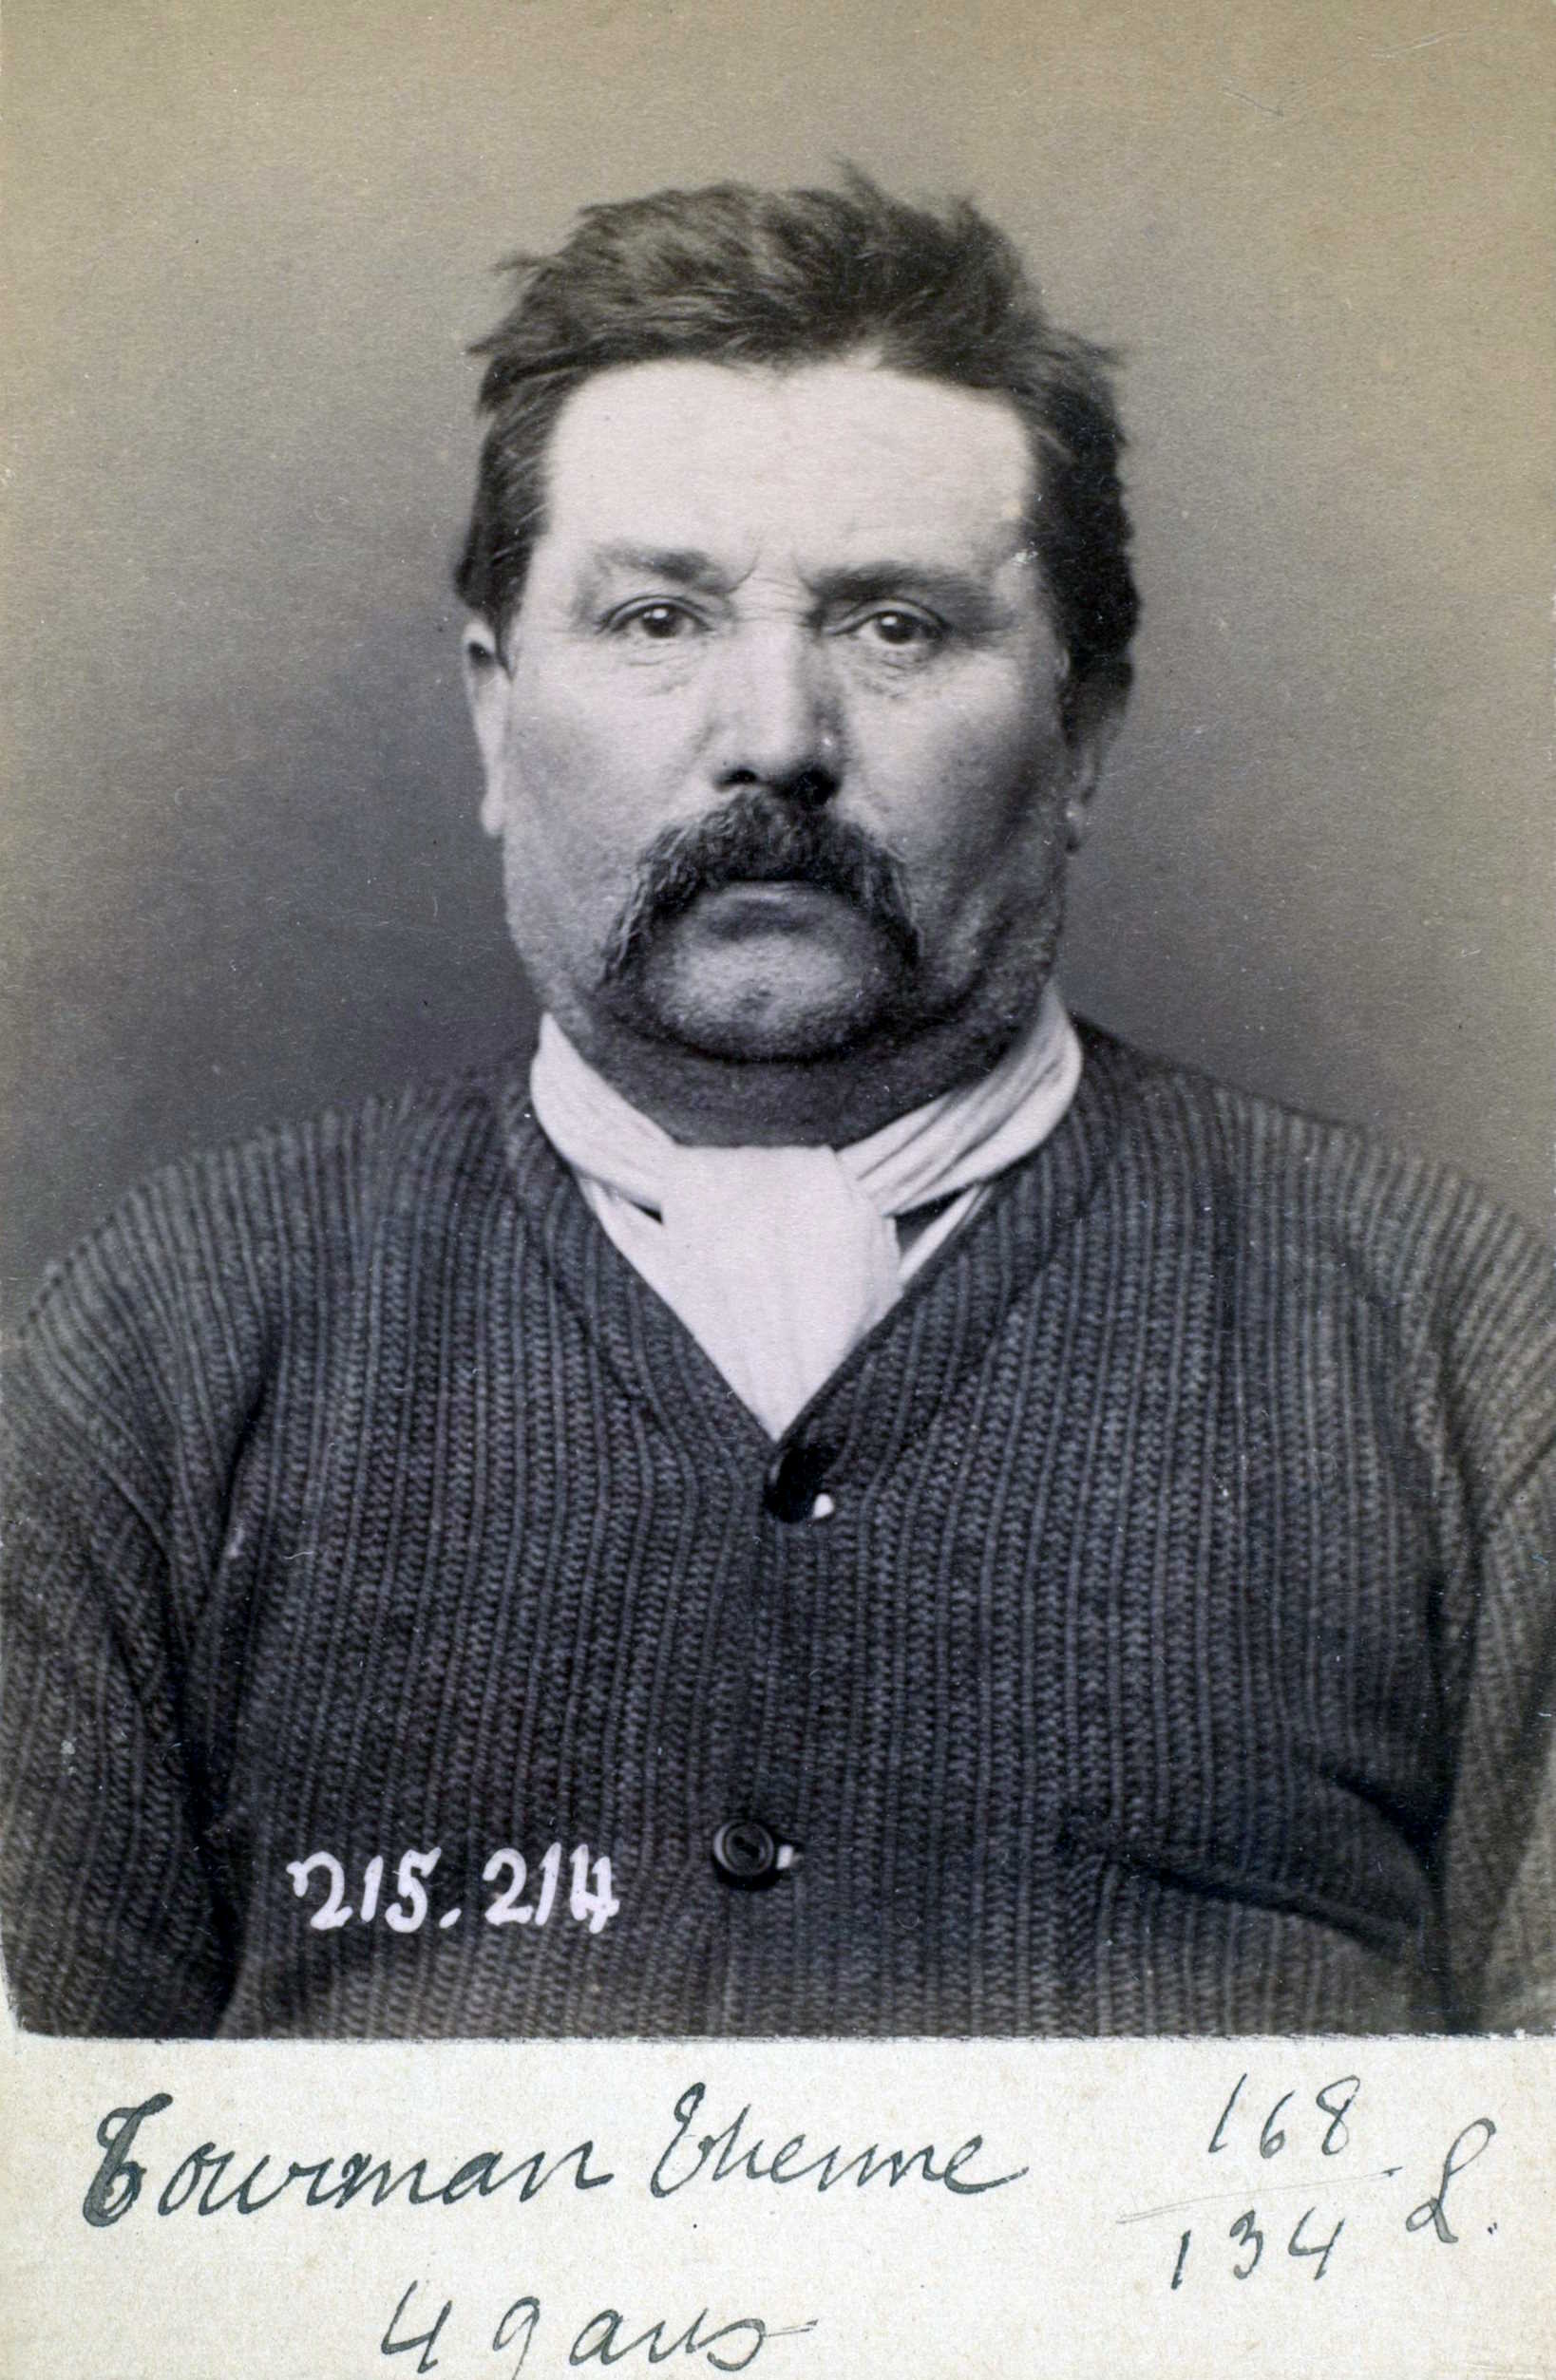 Foto policíaca de Pierre Tournam (6 de març de 1894)